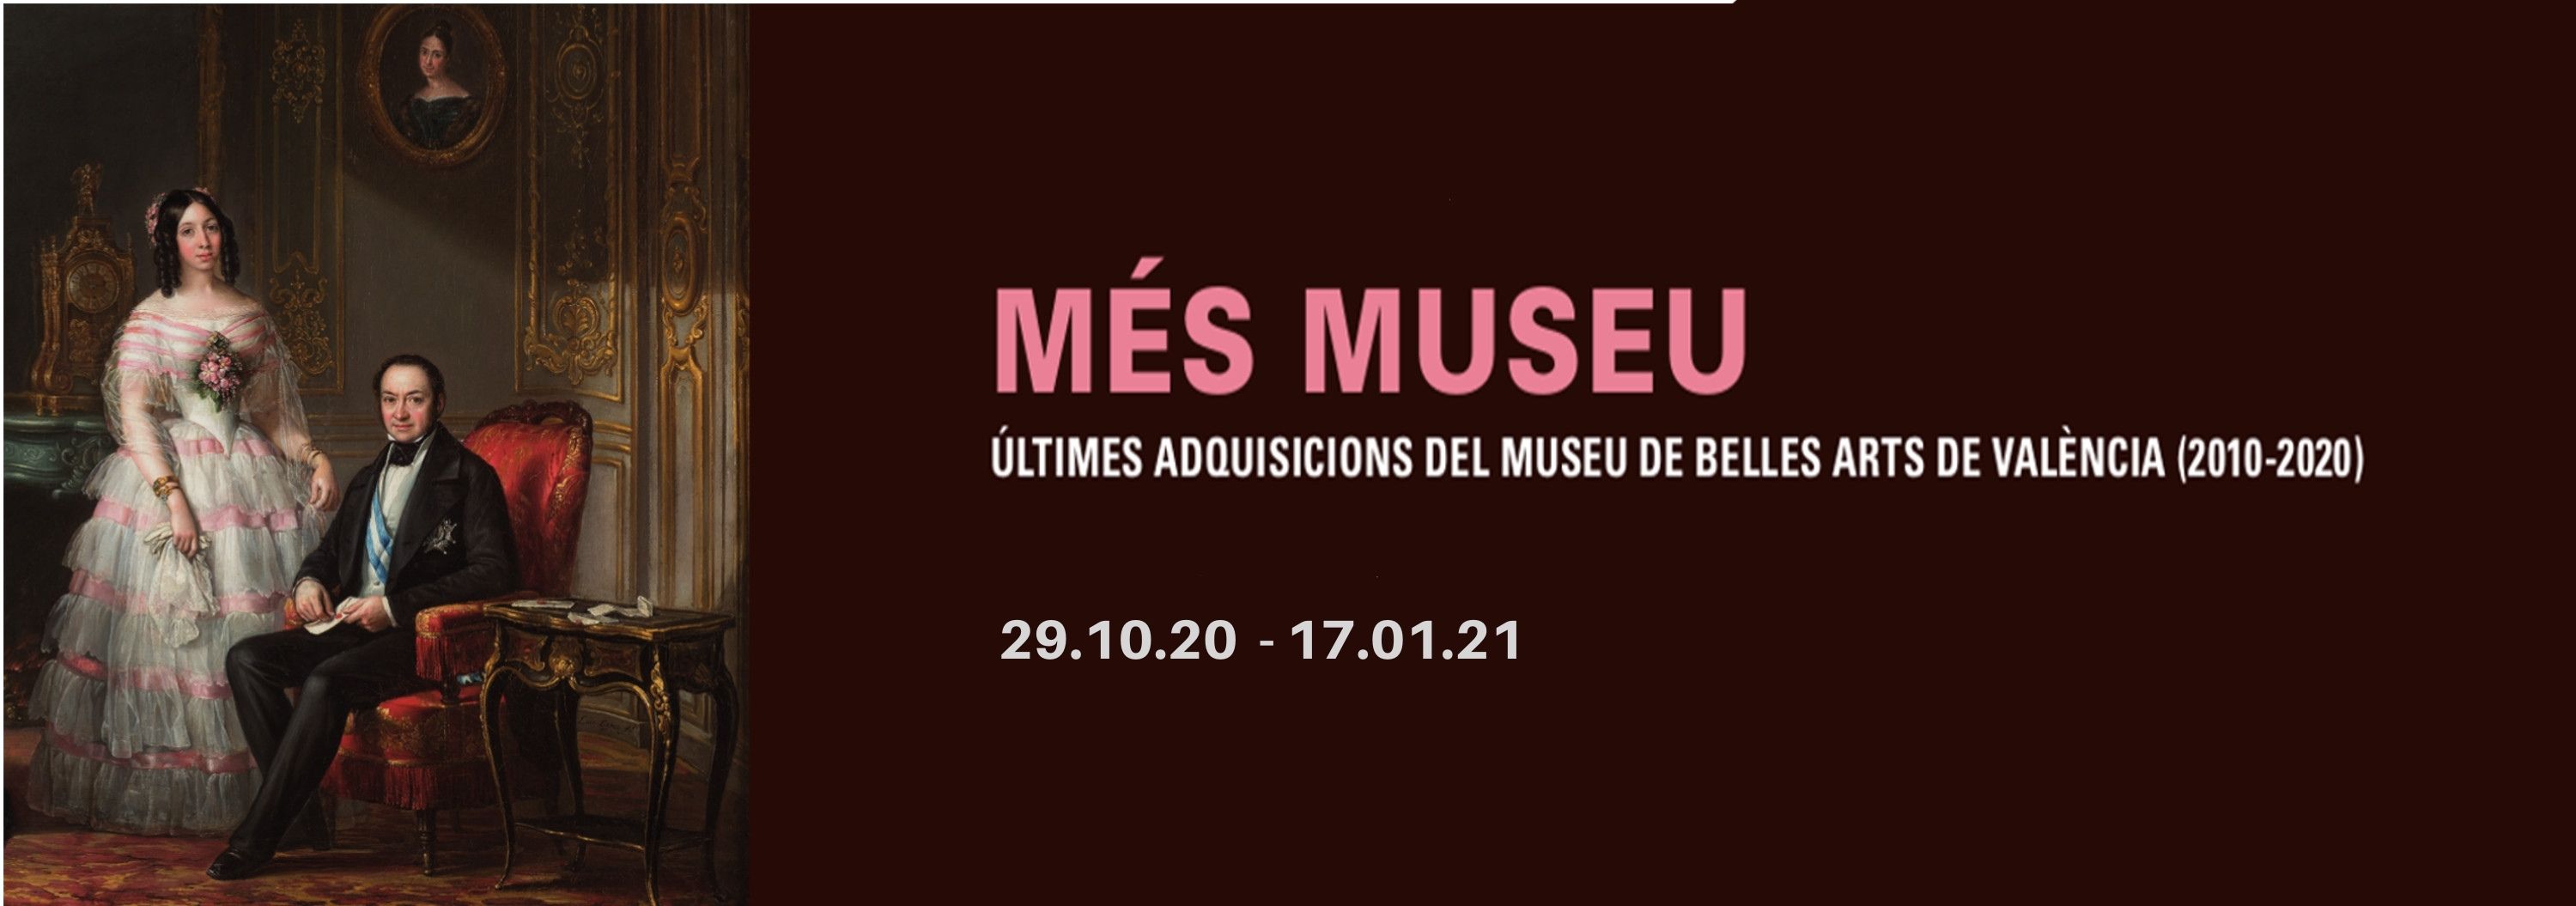 MÉS MUSEU. Últimes adquisicions del Museu de Belles Arts de València (2010-2020)